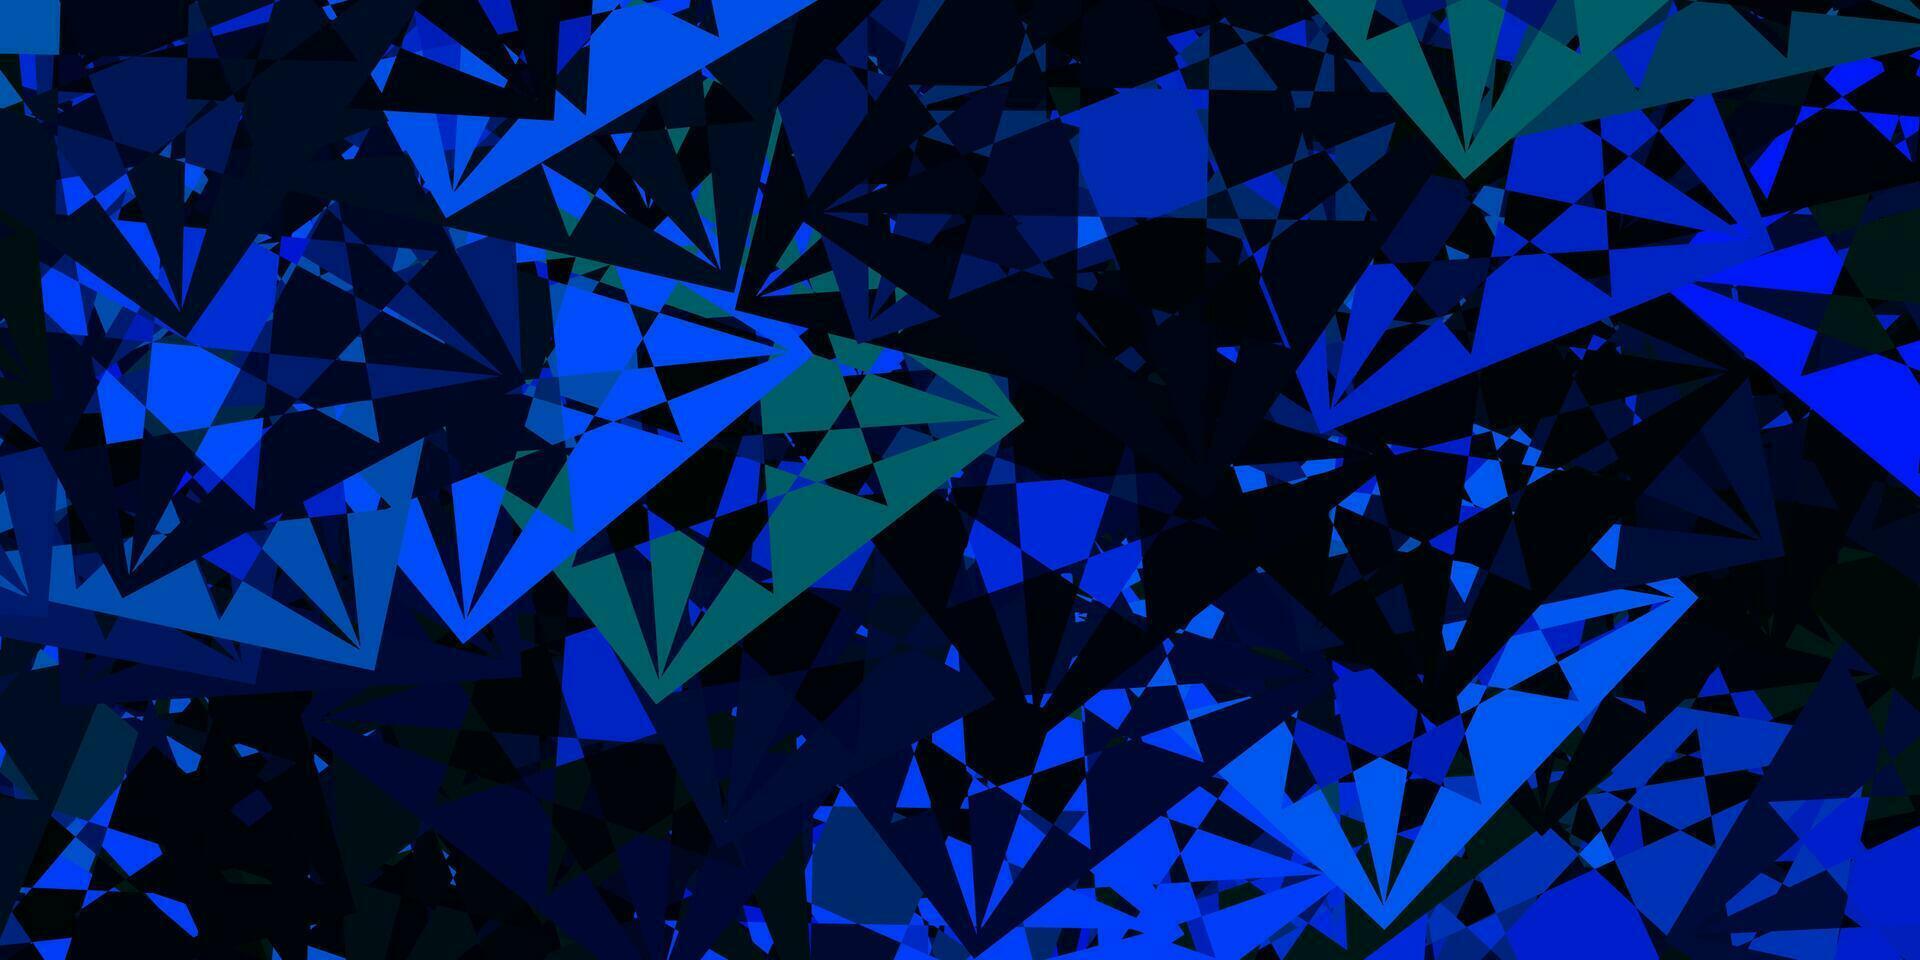 padrão de vetor azul claro e verde com formas poligonais.